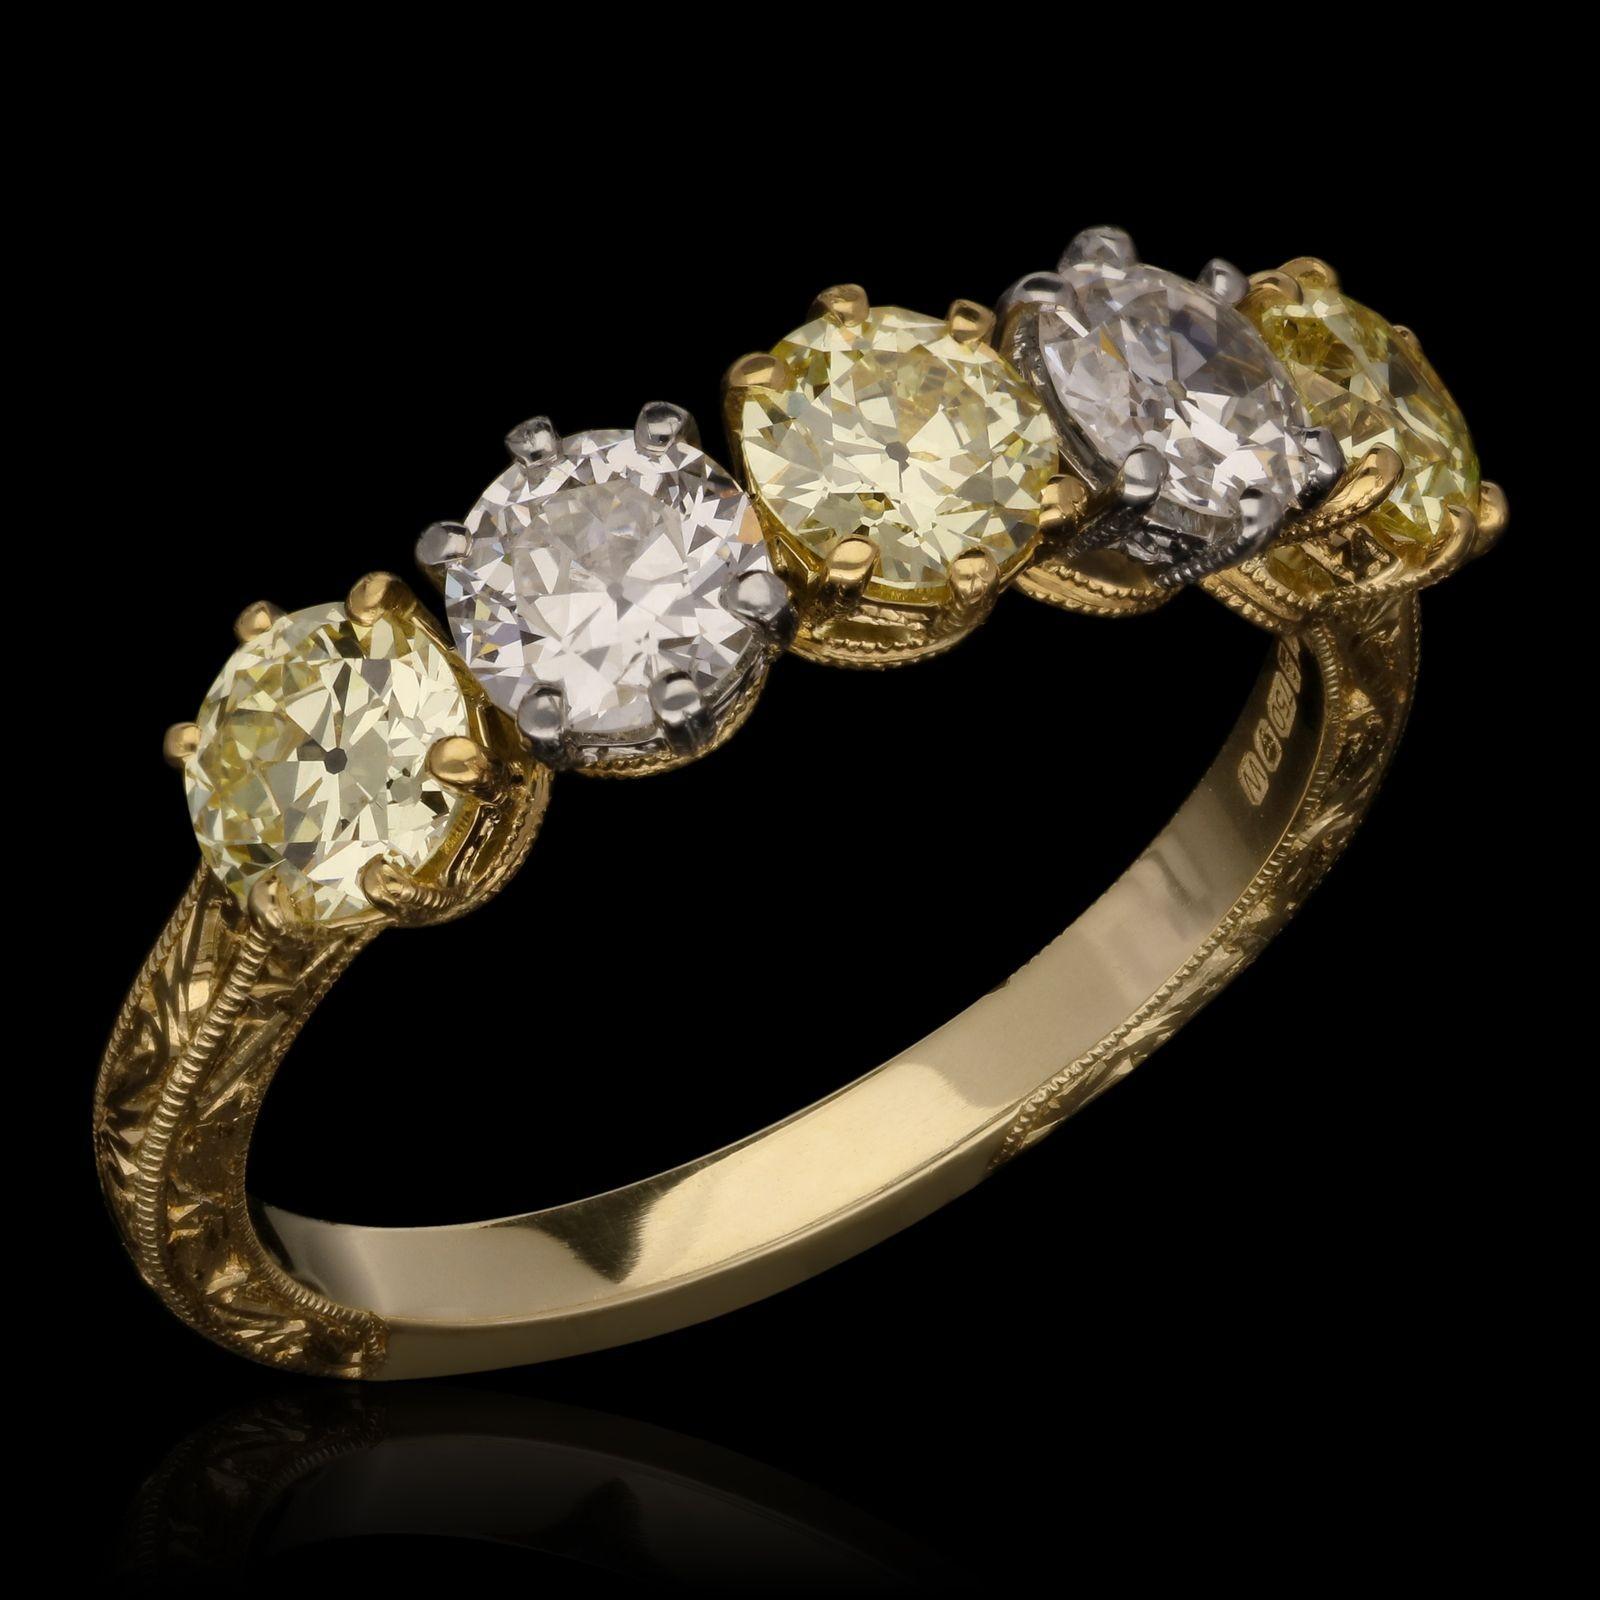 Ein schöner gelber und weißer Altschliff-Diamantring von Hancocks, in einer Reihe mit fünf alten europäischen Diamanten im Brillantschliff mit einem Gesamtgewicht von 1,49cts, zwei weißen Steinen der Farbe G und drei Steinen der Farbe Fancy Yellow,